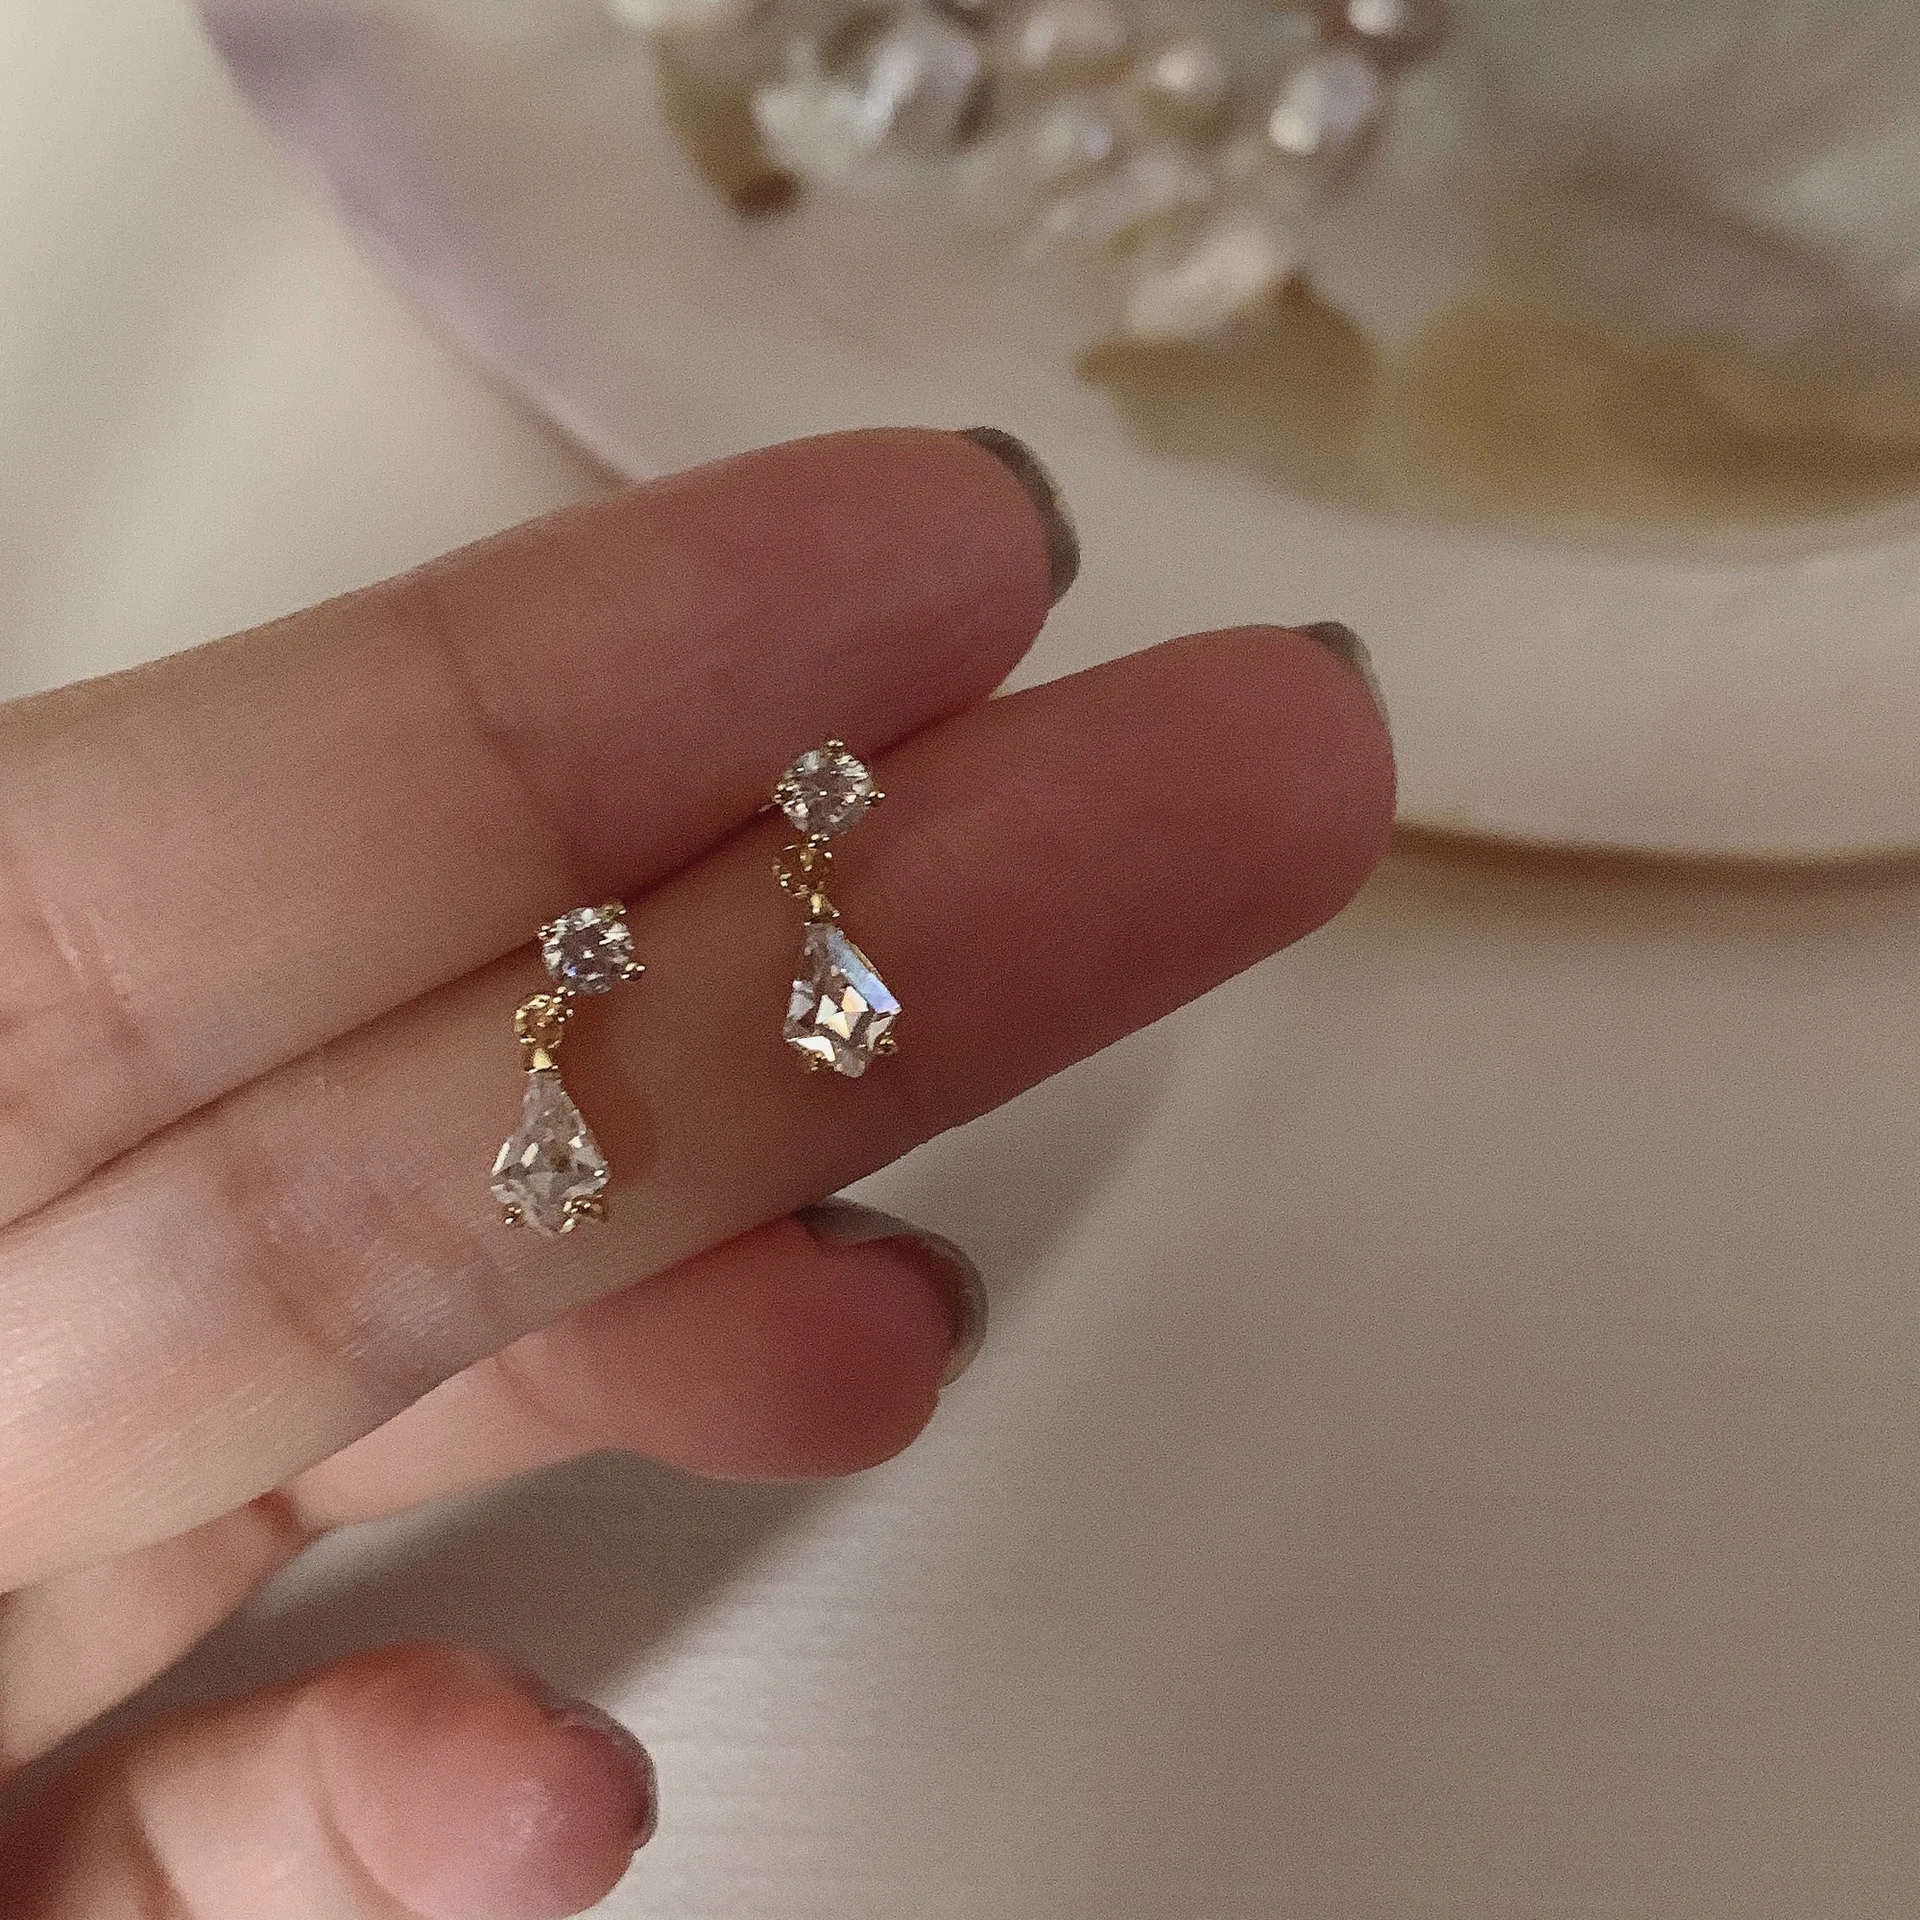 

18K Gold Plated Double Zirconia Small Stud Earring Waterdrop Geometric Earrings for Women Minimalist 925 Sterling Silver Jewelry, Gold/silver